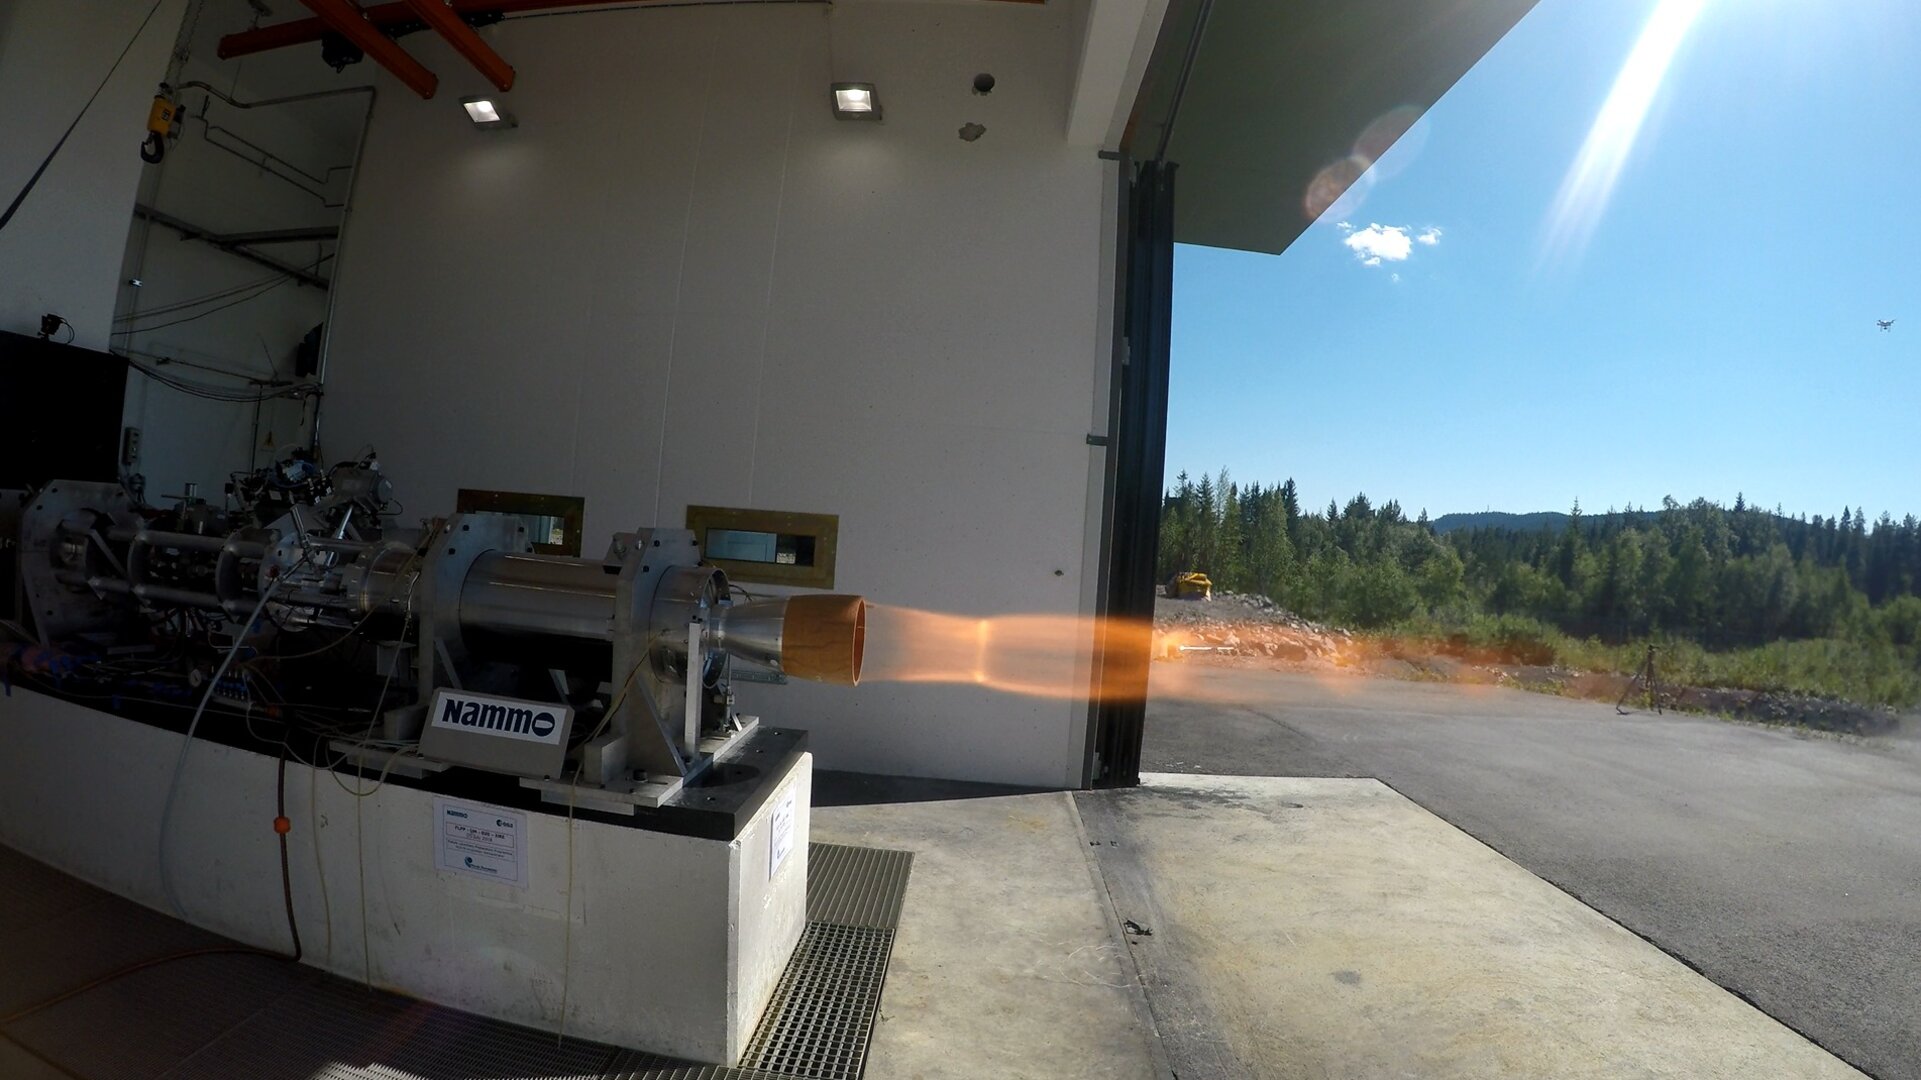 Hybrid rocket motor static firing at Nammo in Norway